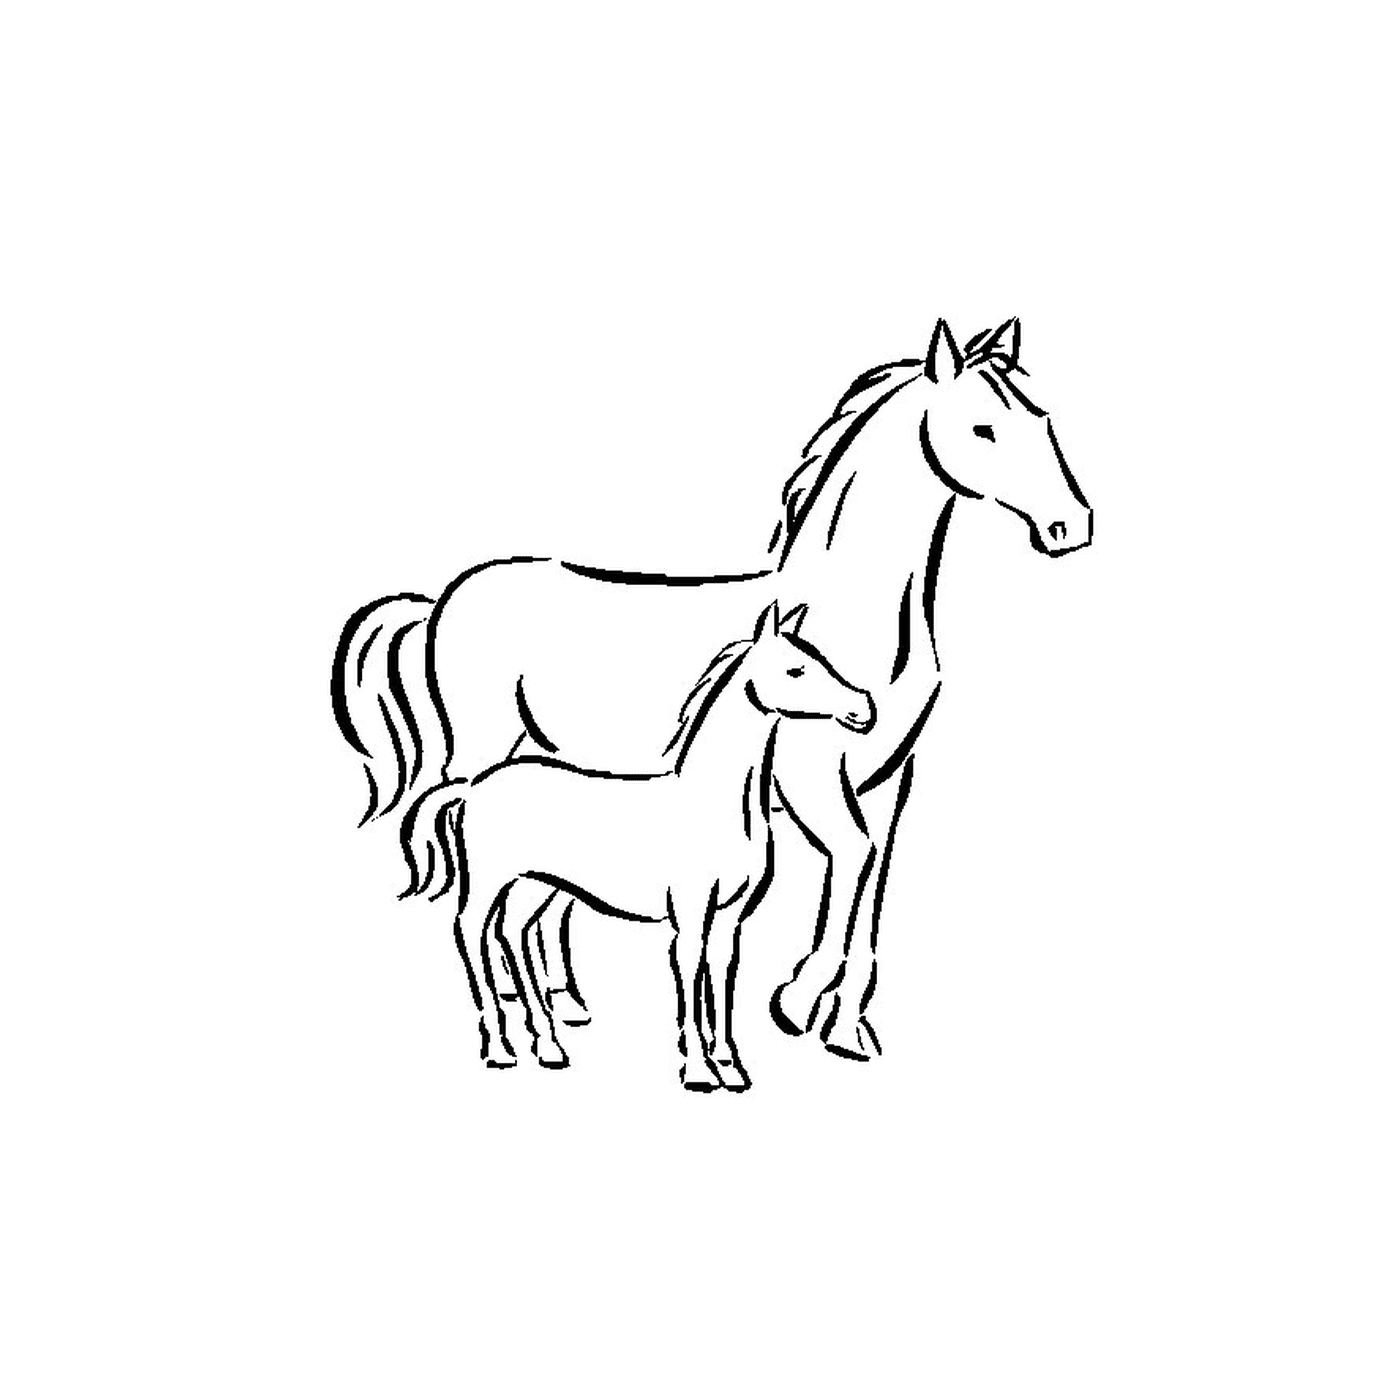   Chevaux - Un cheval et un poulain debout côte à côte 